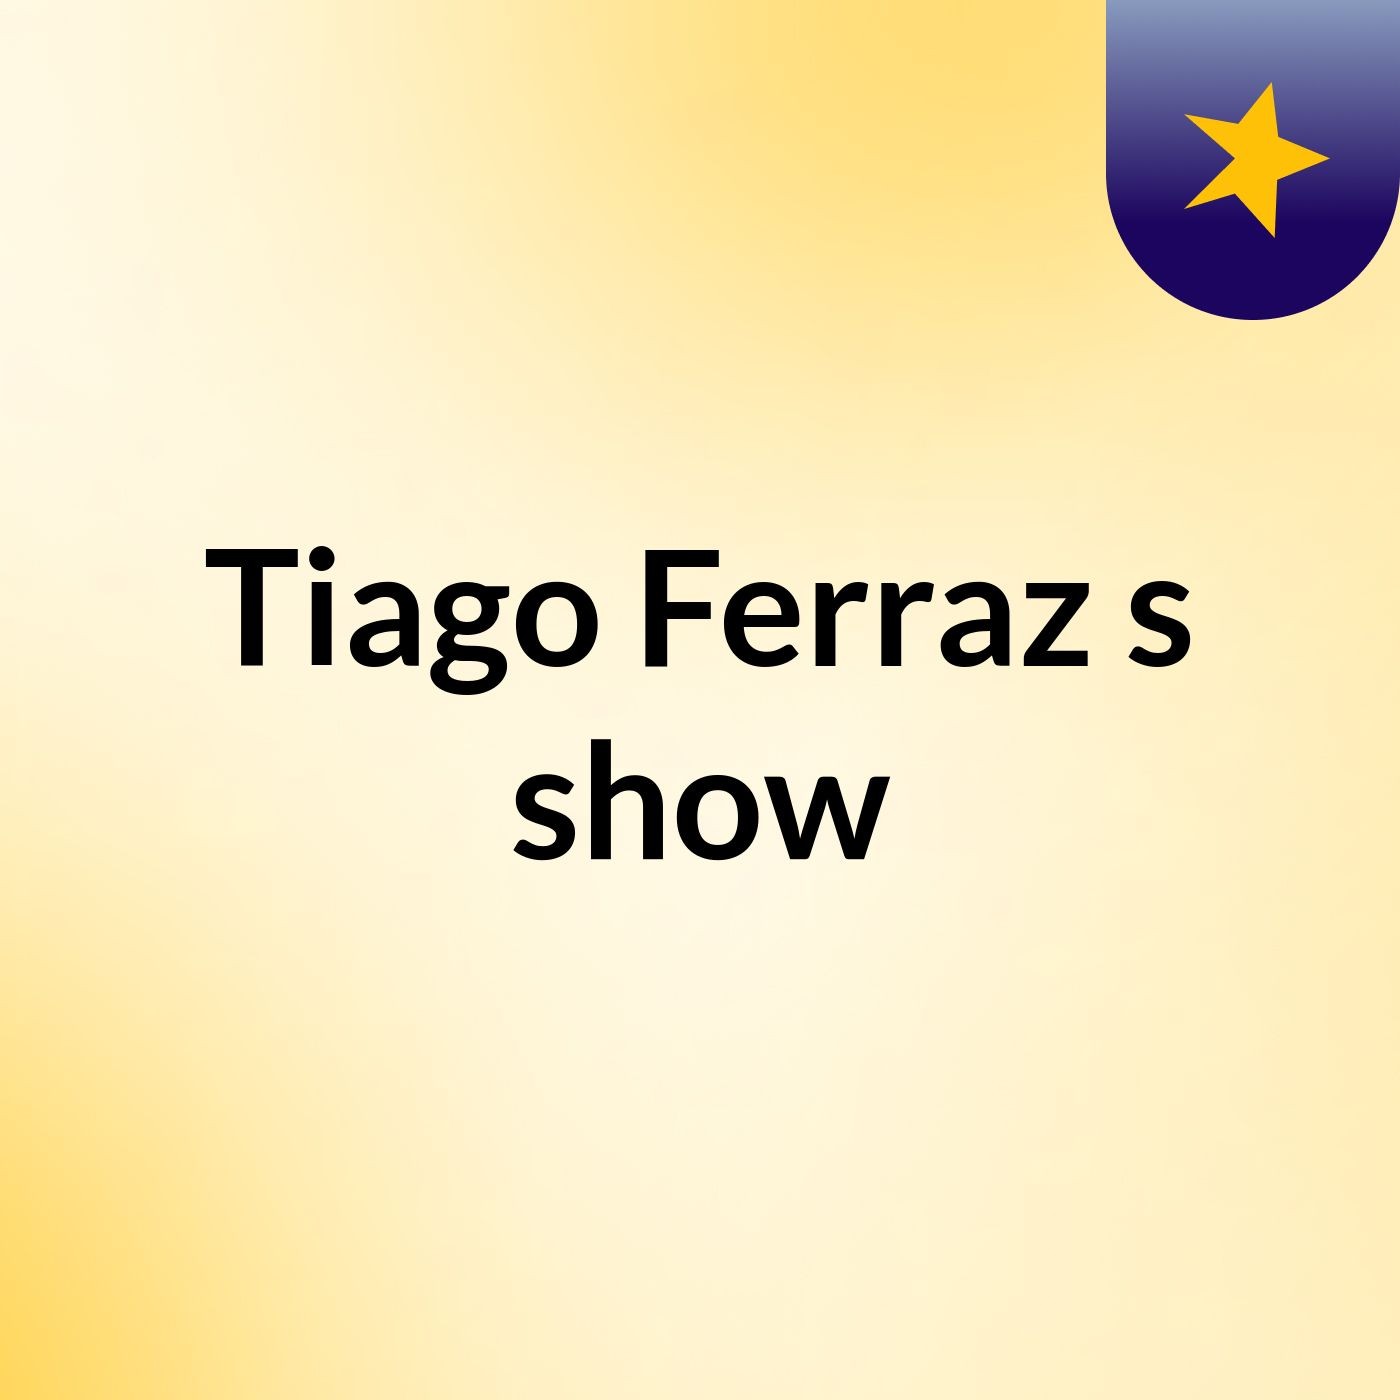 Tiago Ferraz's show